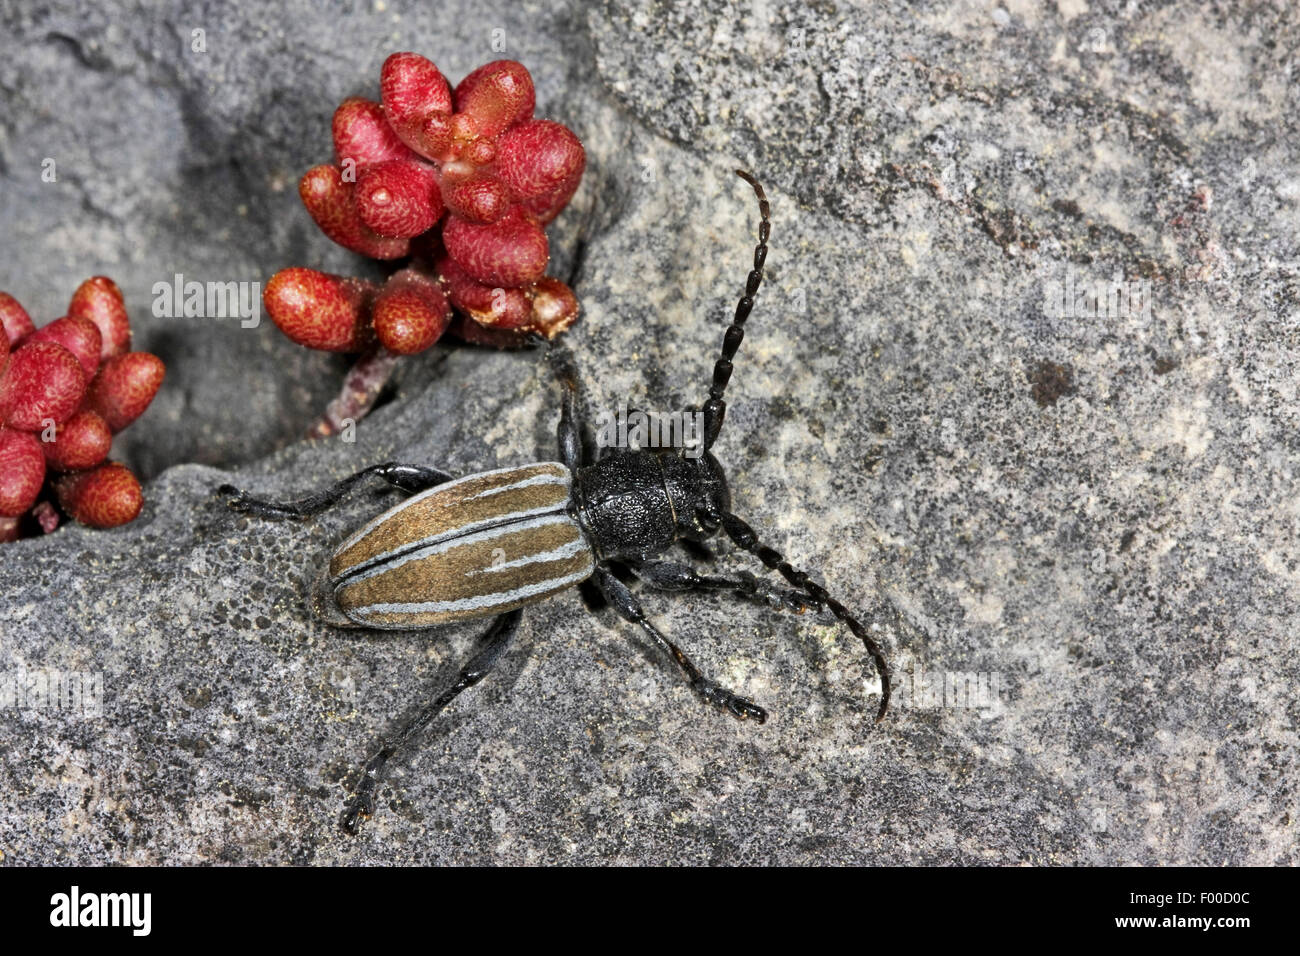 L'alimentation de la Beetle, longicorne aptère (Dorcadion fuliginator, Iberodorcadion fuliginator), sur une pierre, Allemagne Banque D'Images